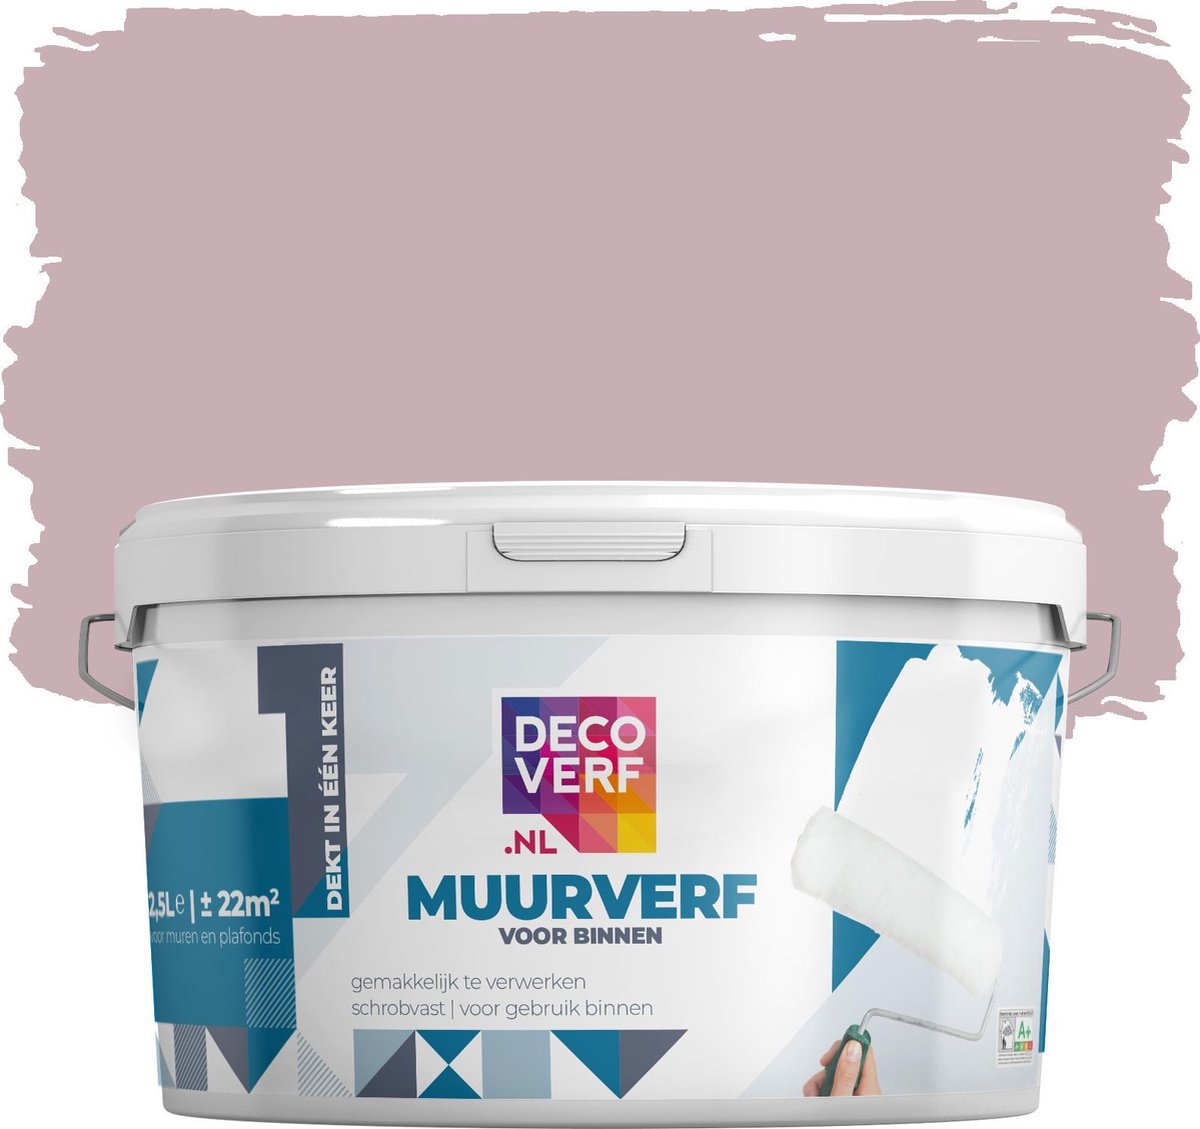 Decoverf muurverf mat, Oud roze, 2.5L - Decoverf.nl